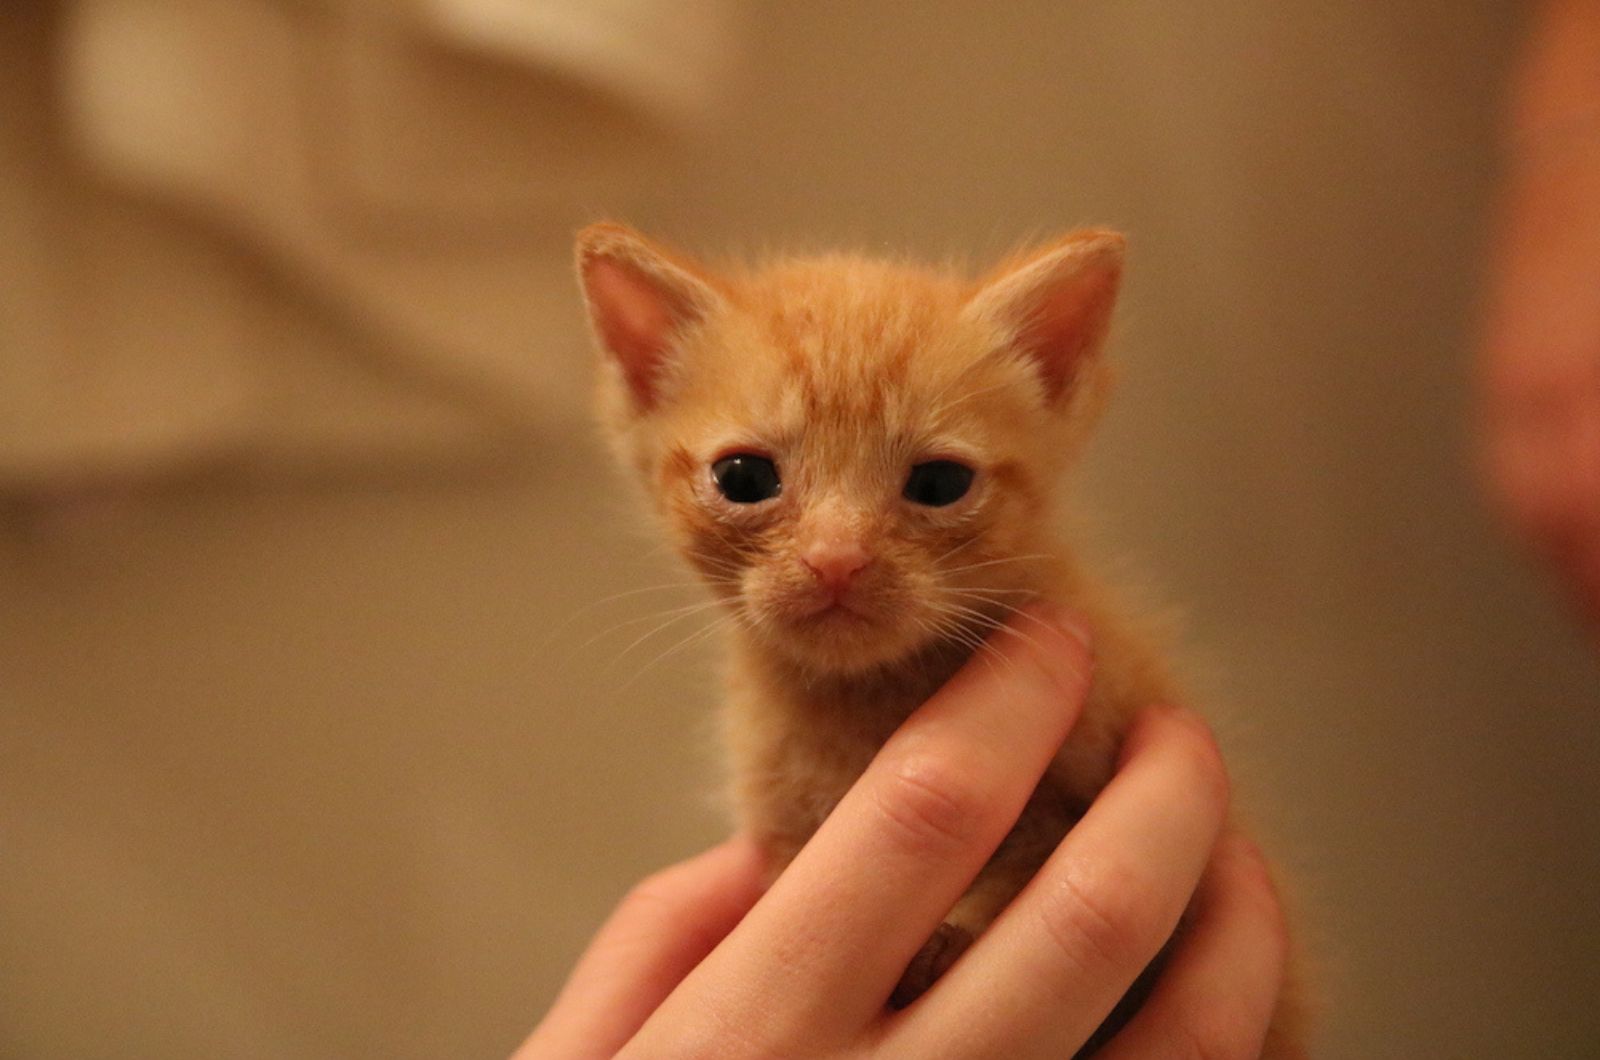 little ginger kitten in hand